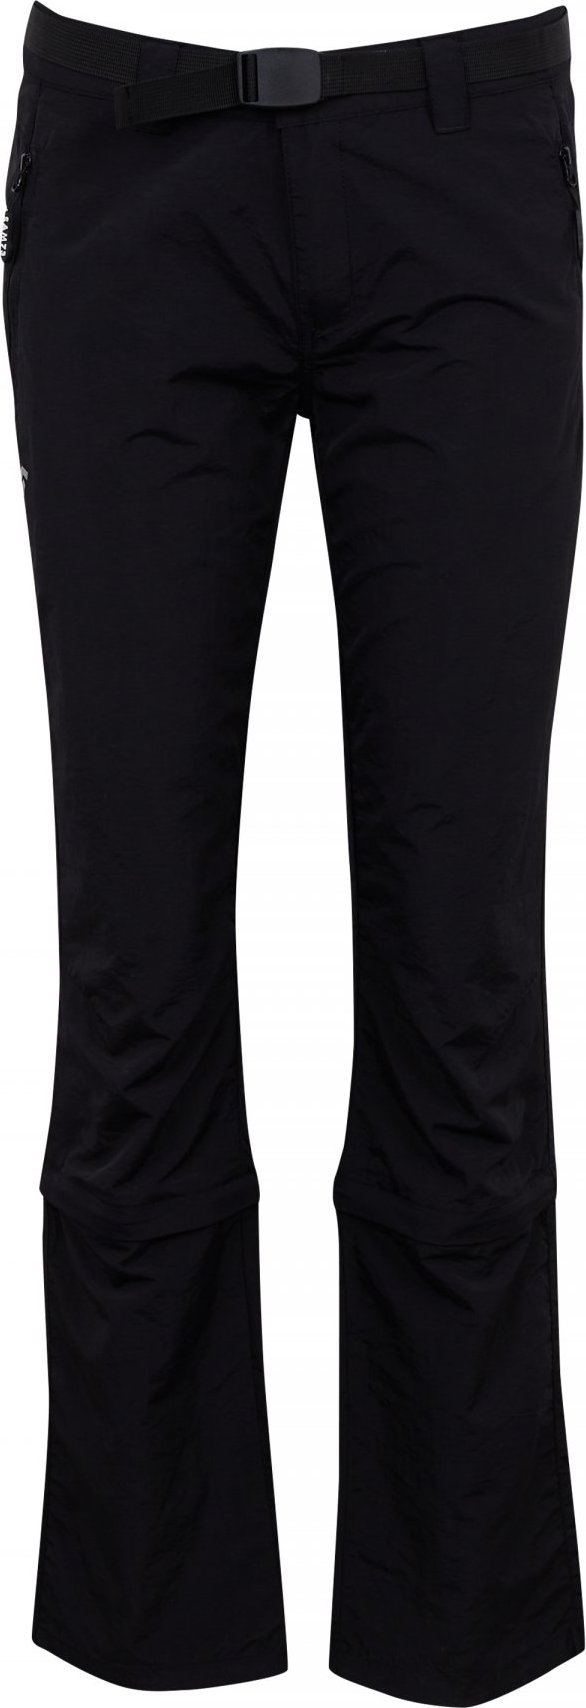 Dámské kalhoty SAM 73 Aries černé Velikost: XL